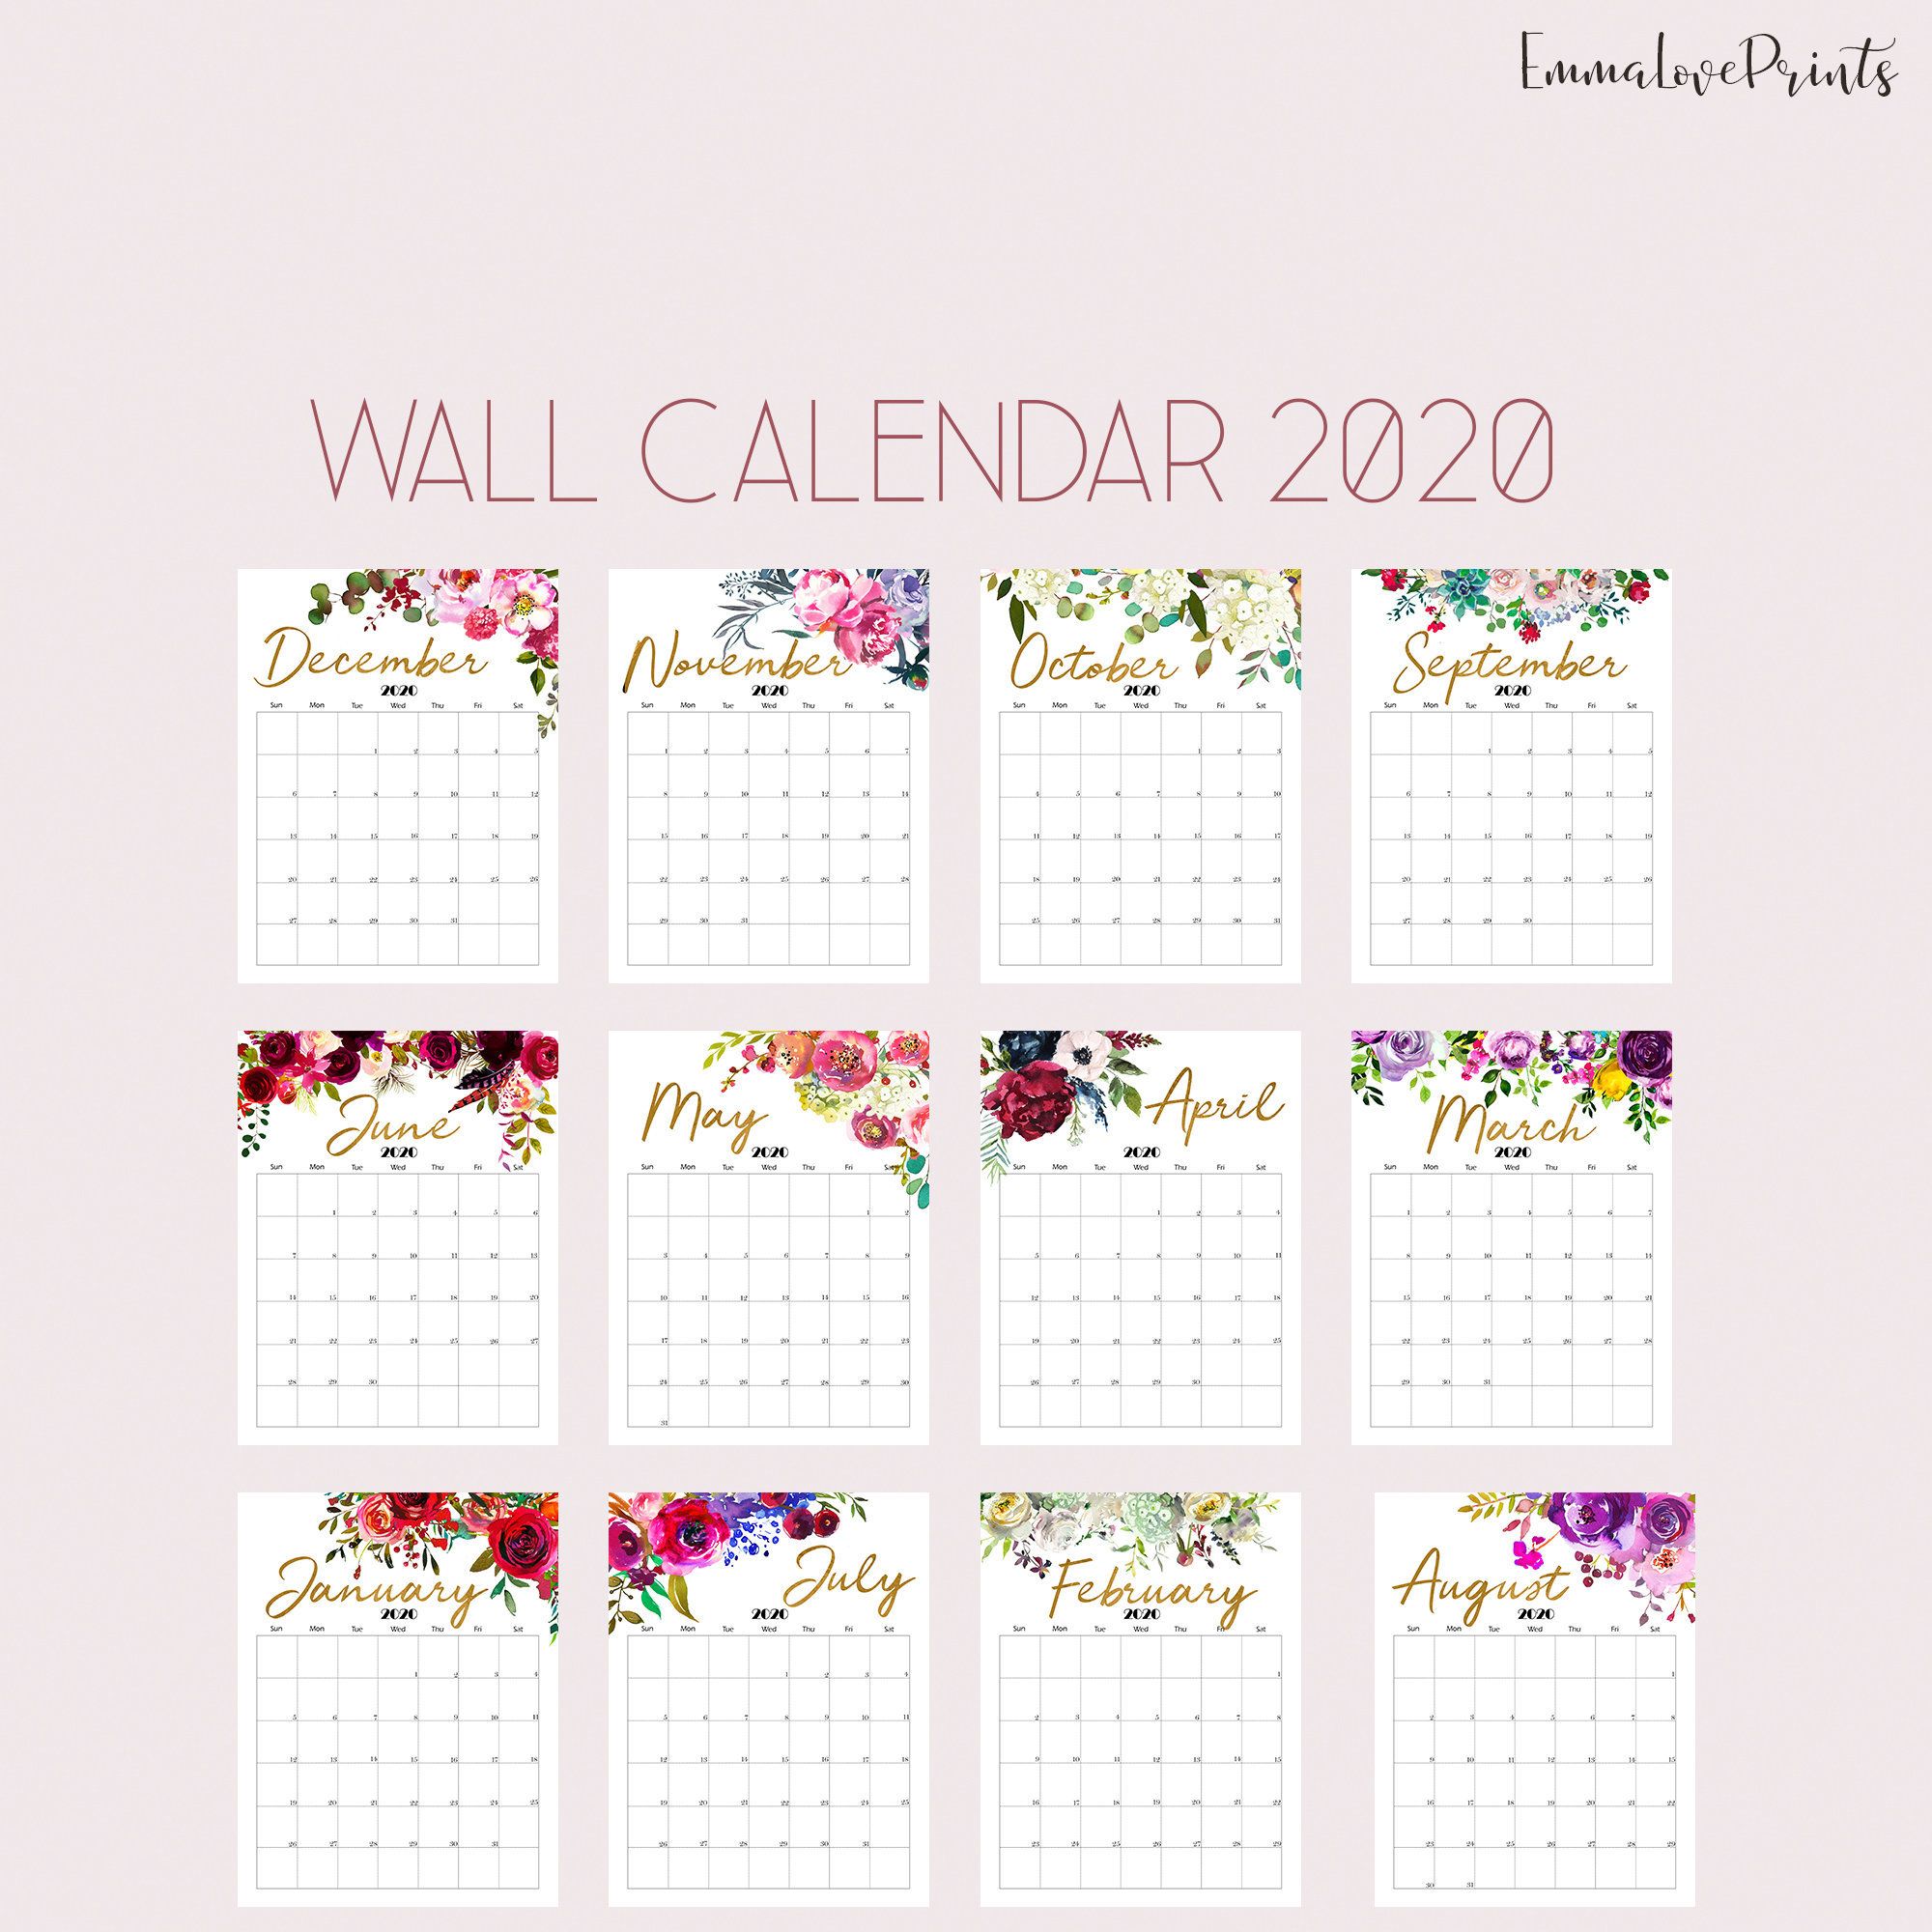 Printable calendar 2020 a3 size